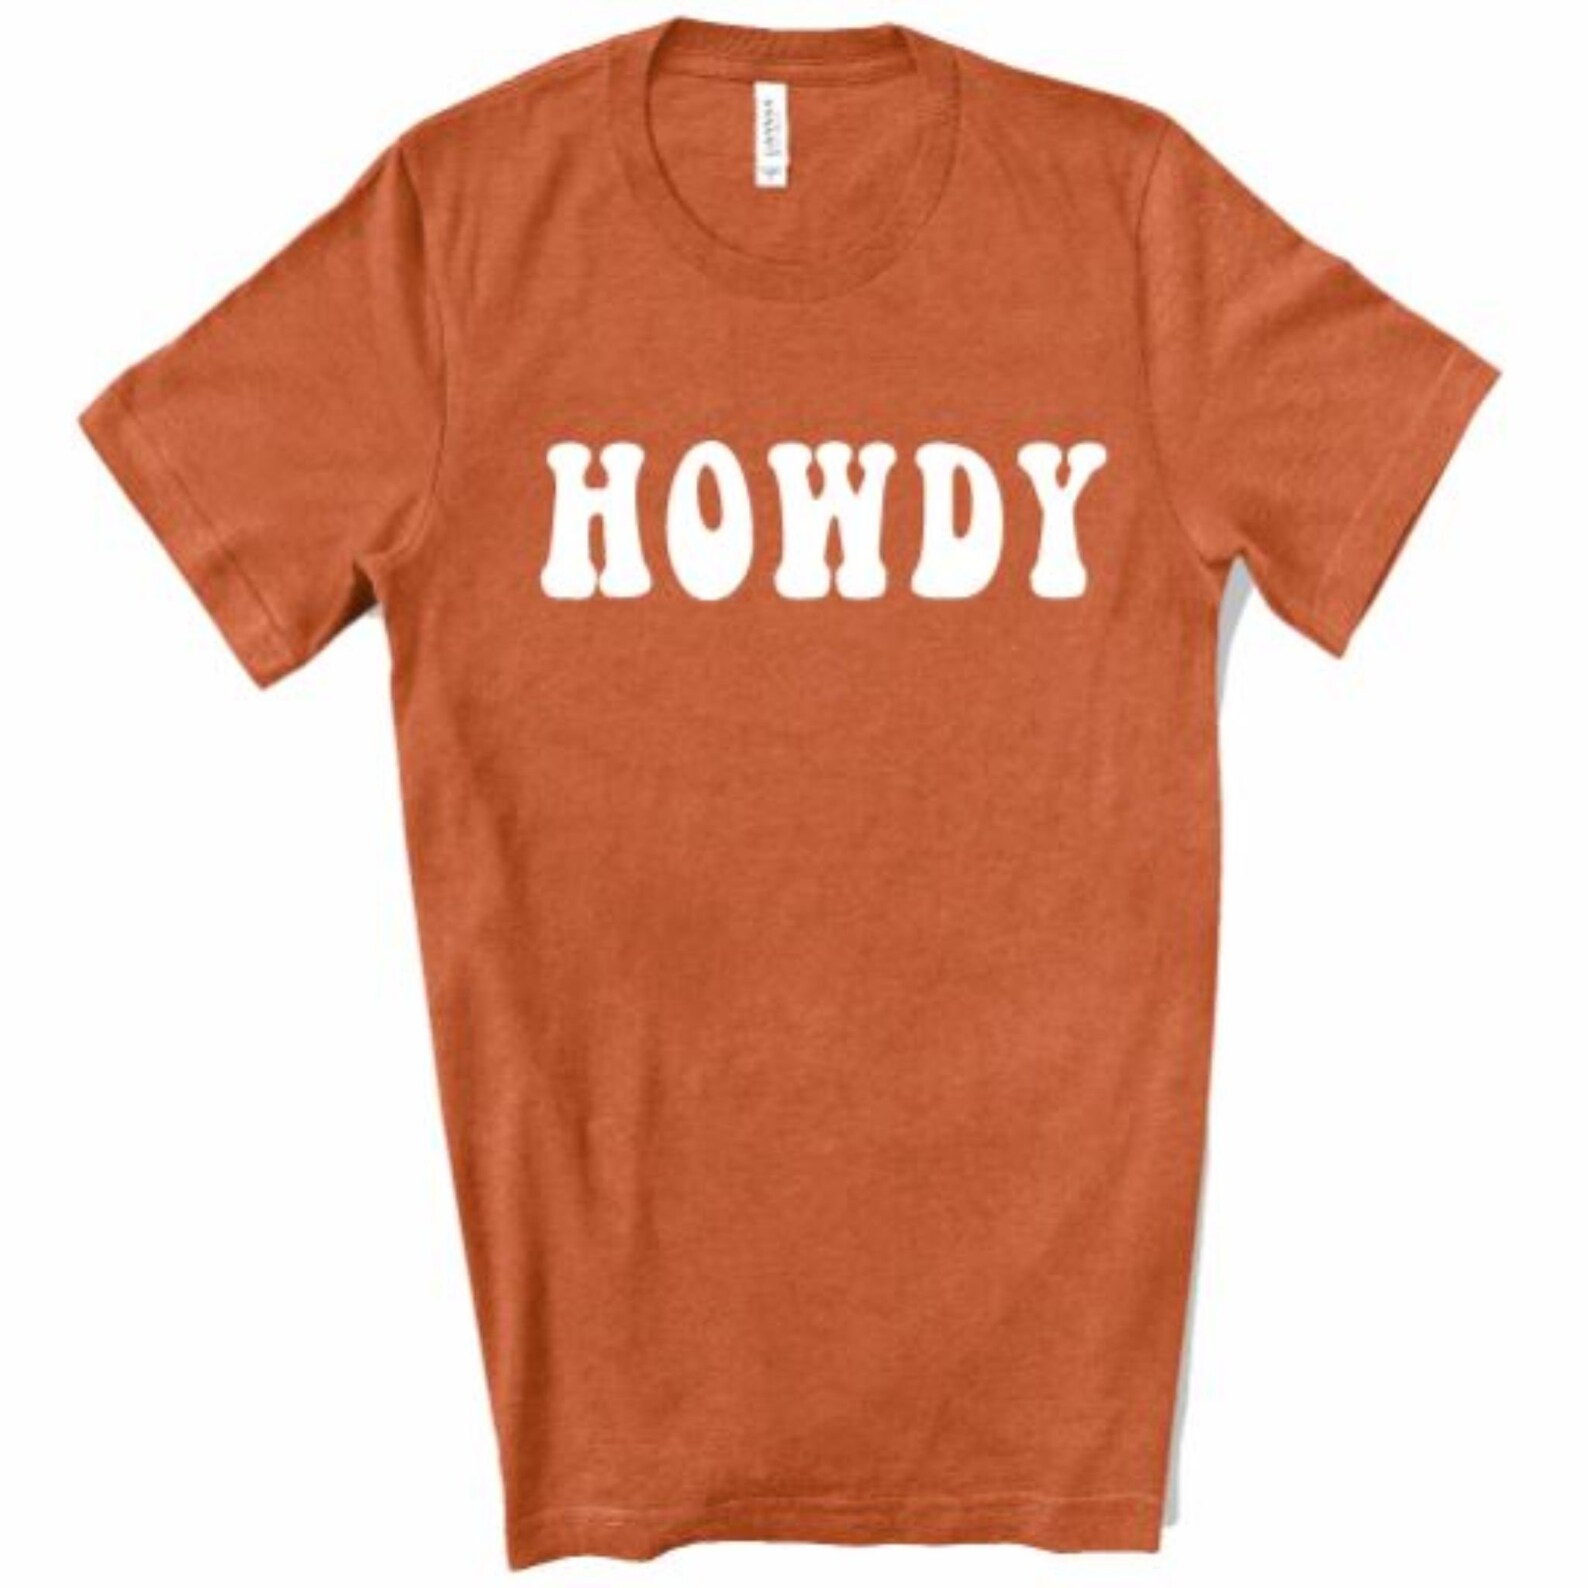 Howdy Shirt Texas A&M Shirt TAMU Shirt Howdy Tee Texas | Etsy